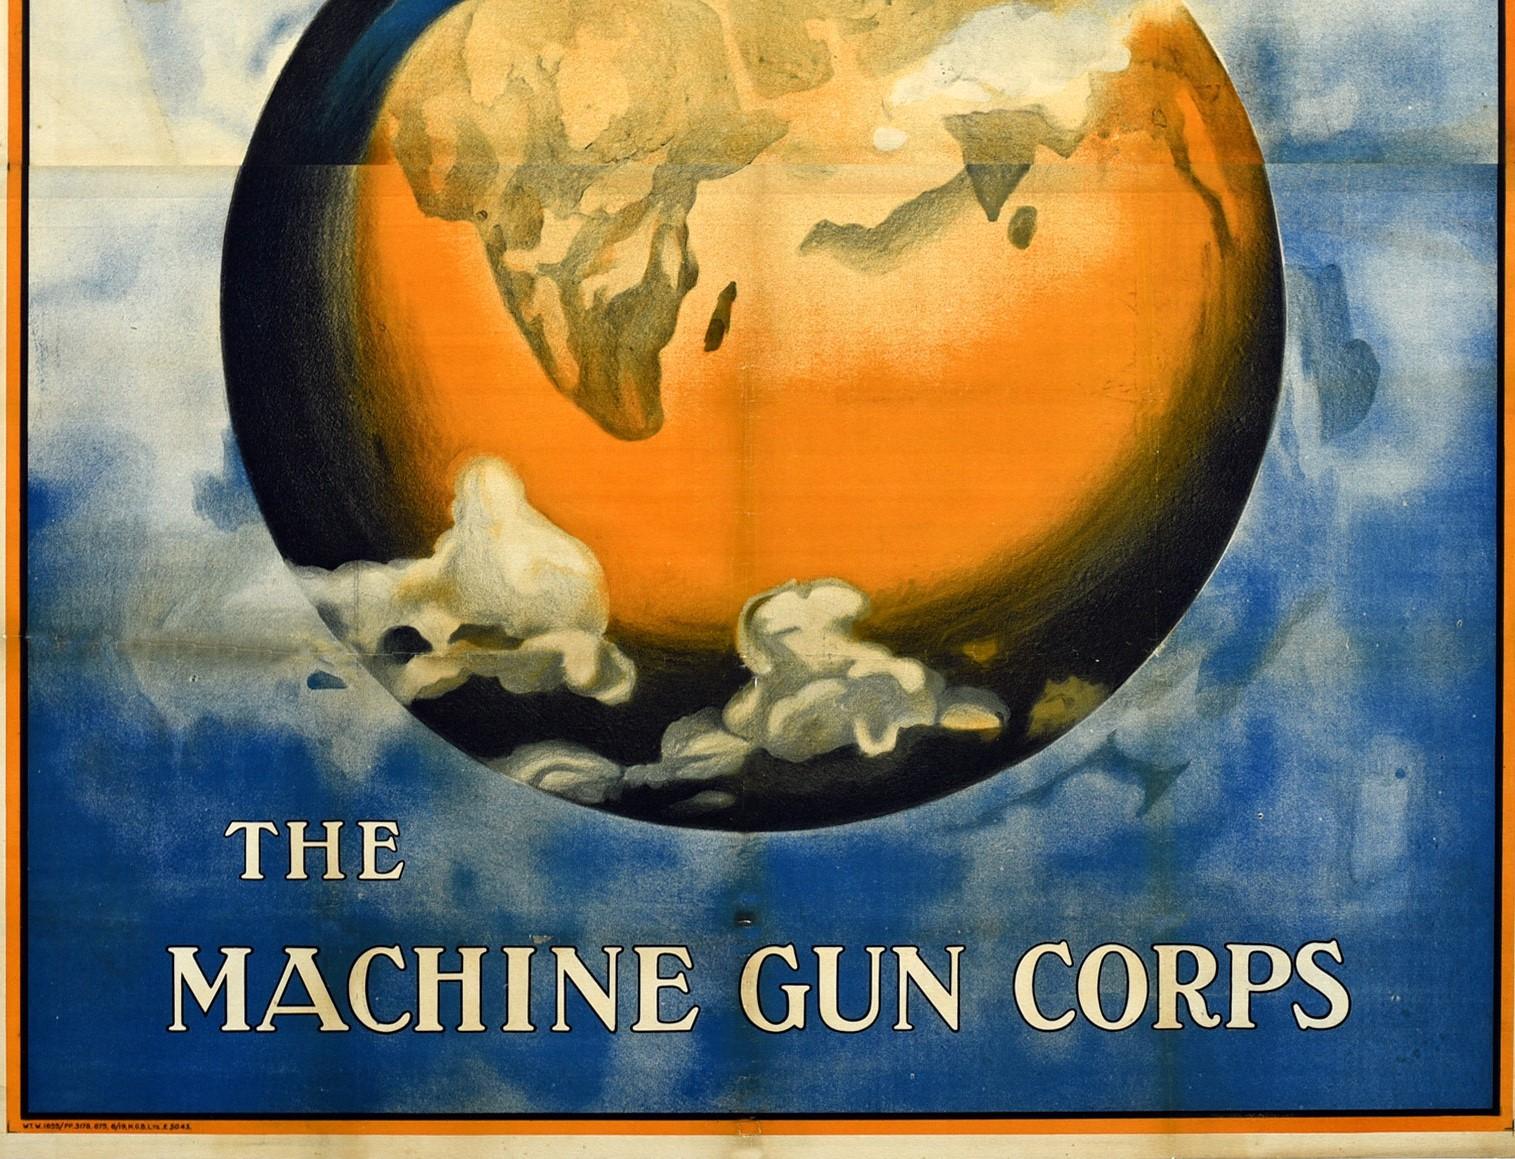 Original Antique British Army Machine Gun Corps Recruitment Poster Travel World - Beige Print by Unknown